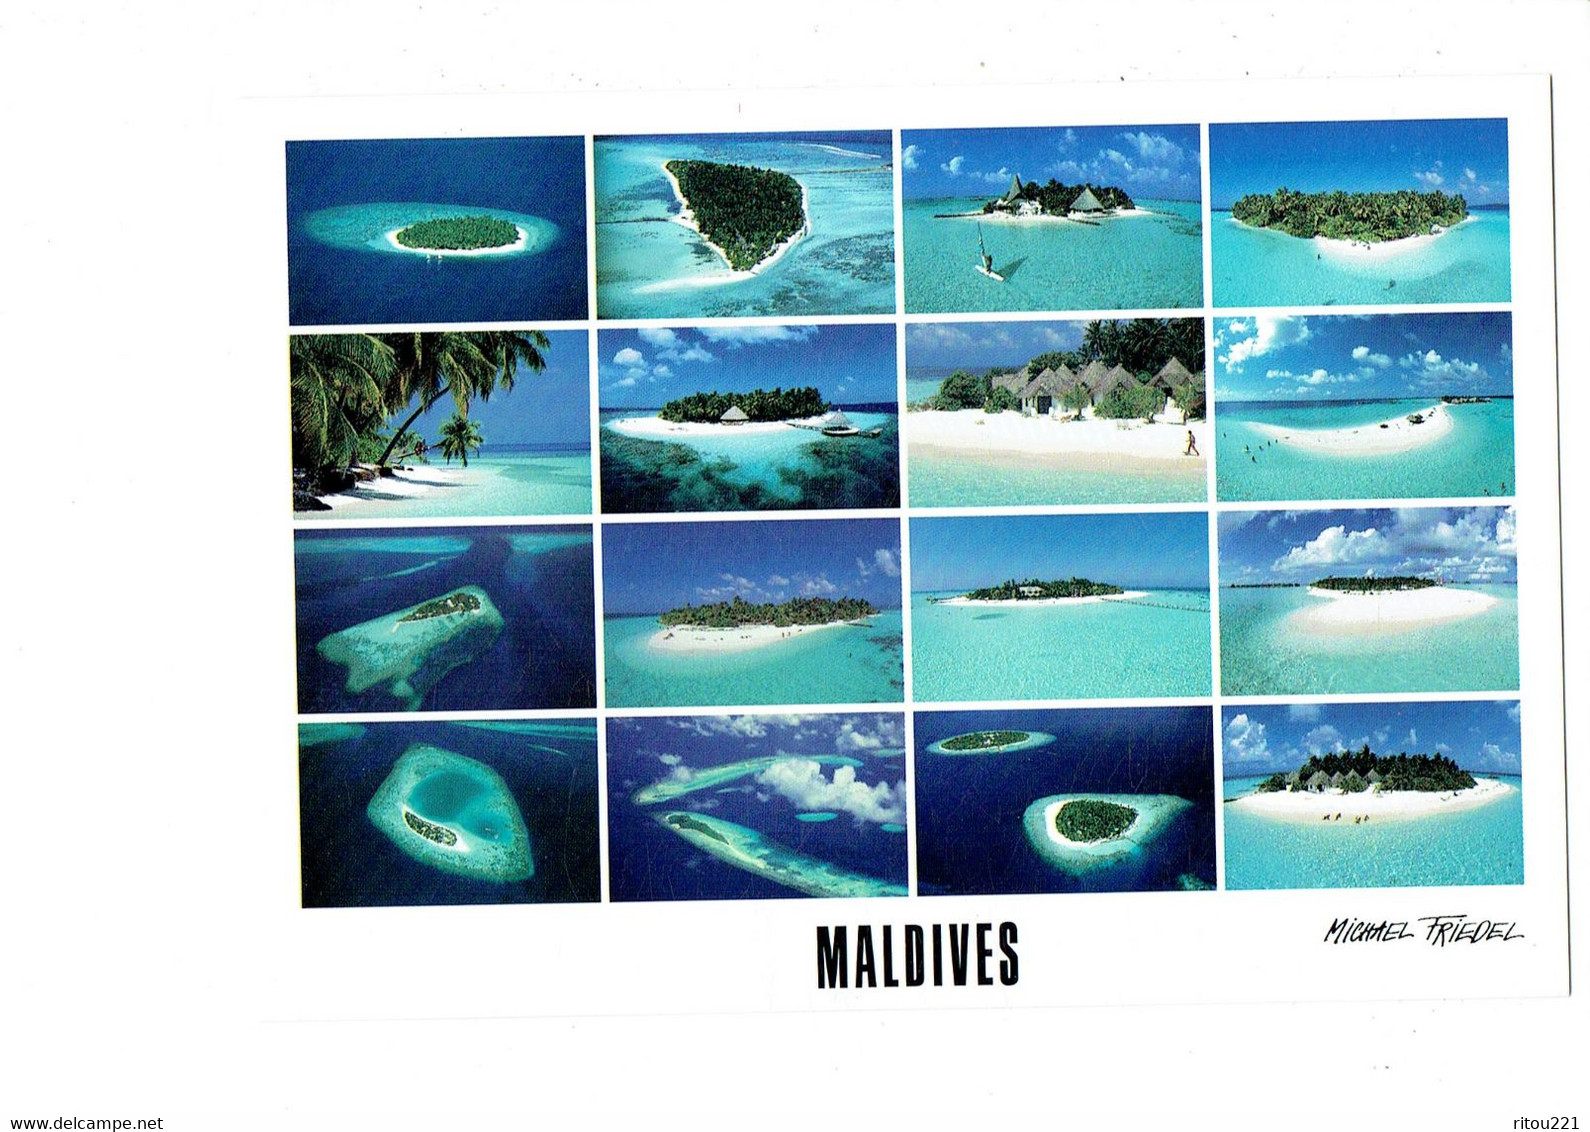 Cpm - MALDIVES - HOTEL ISLANDS - Photo Michael Friedel - Club Med. IHURU BANDOS Plage - Maldiven